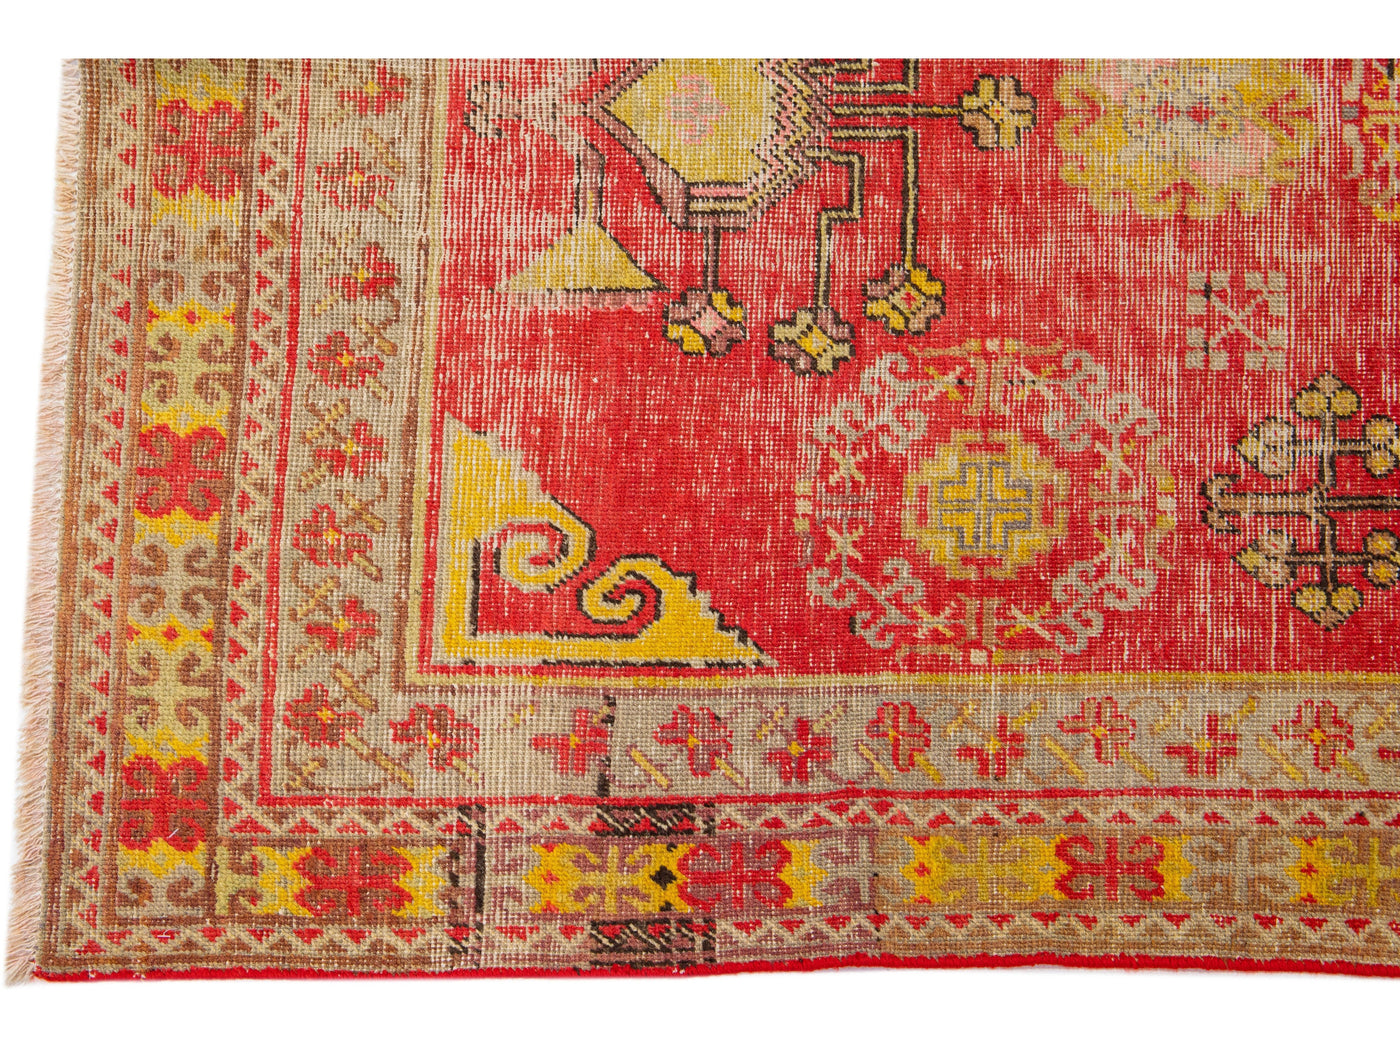 Antique Turkish Khotan Wool Rug 4 X 9